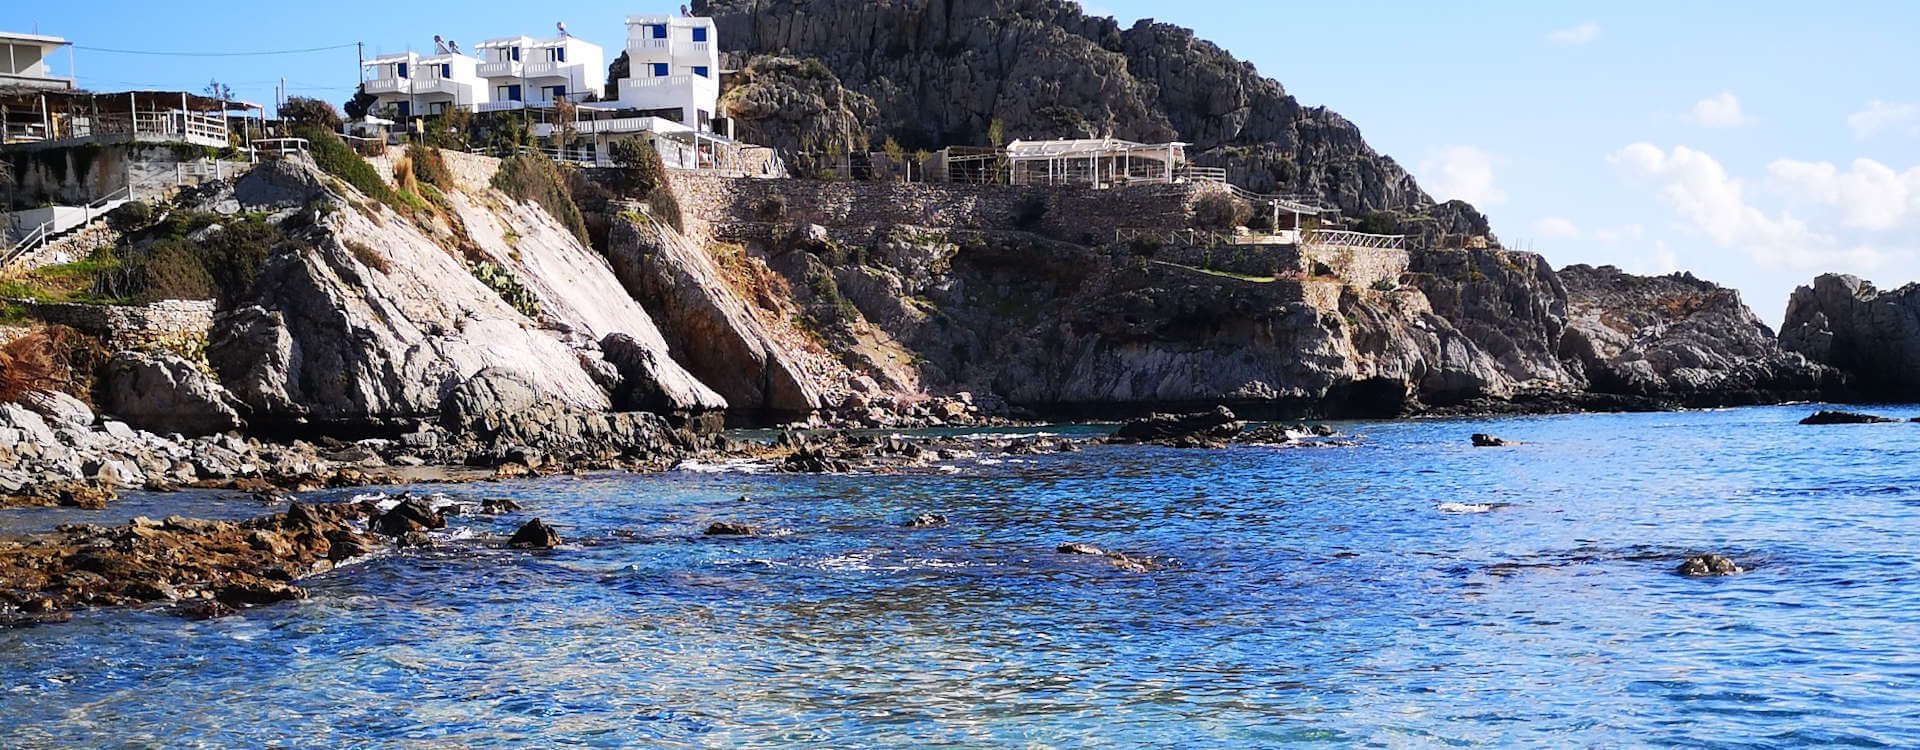 Yoga Rocks retreats from the clear sea at Agios Pavlos